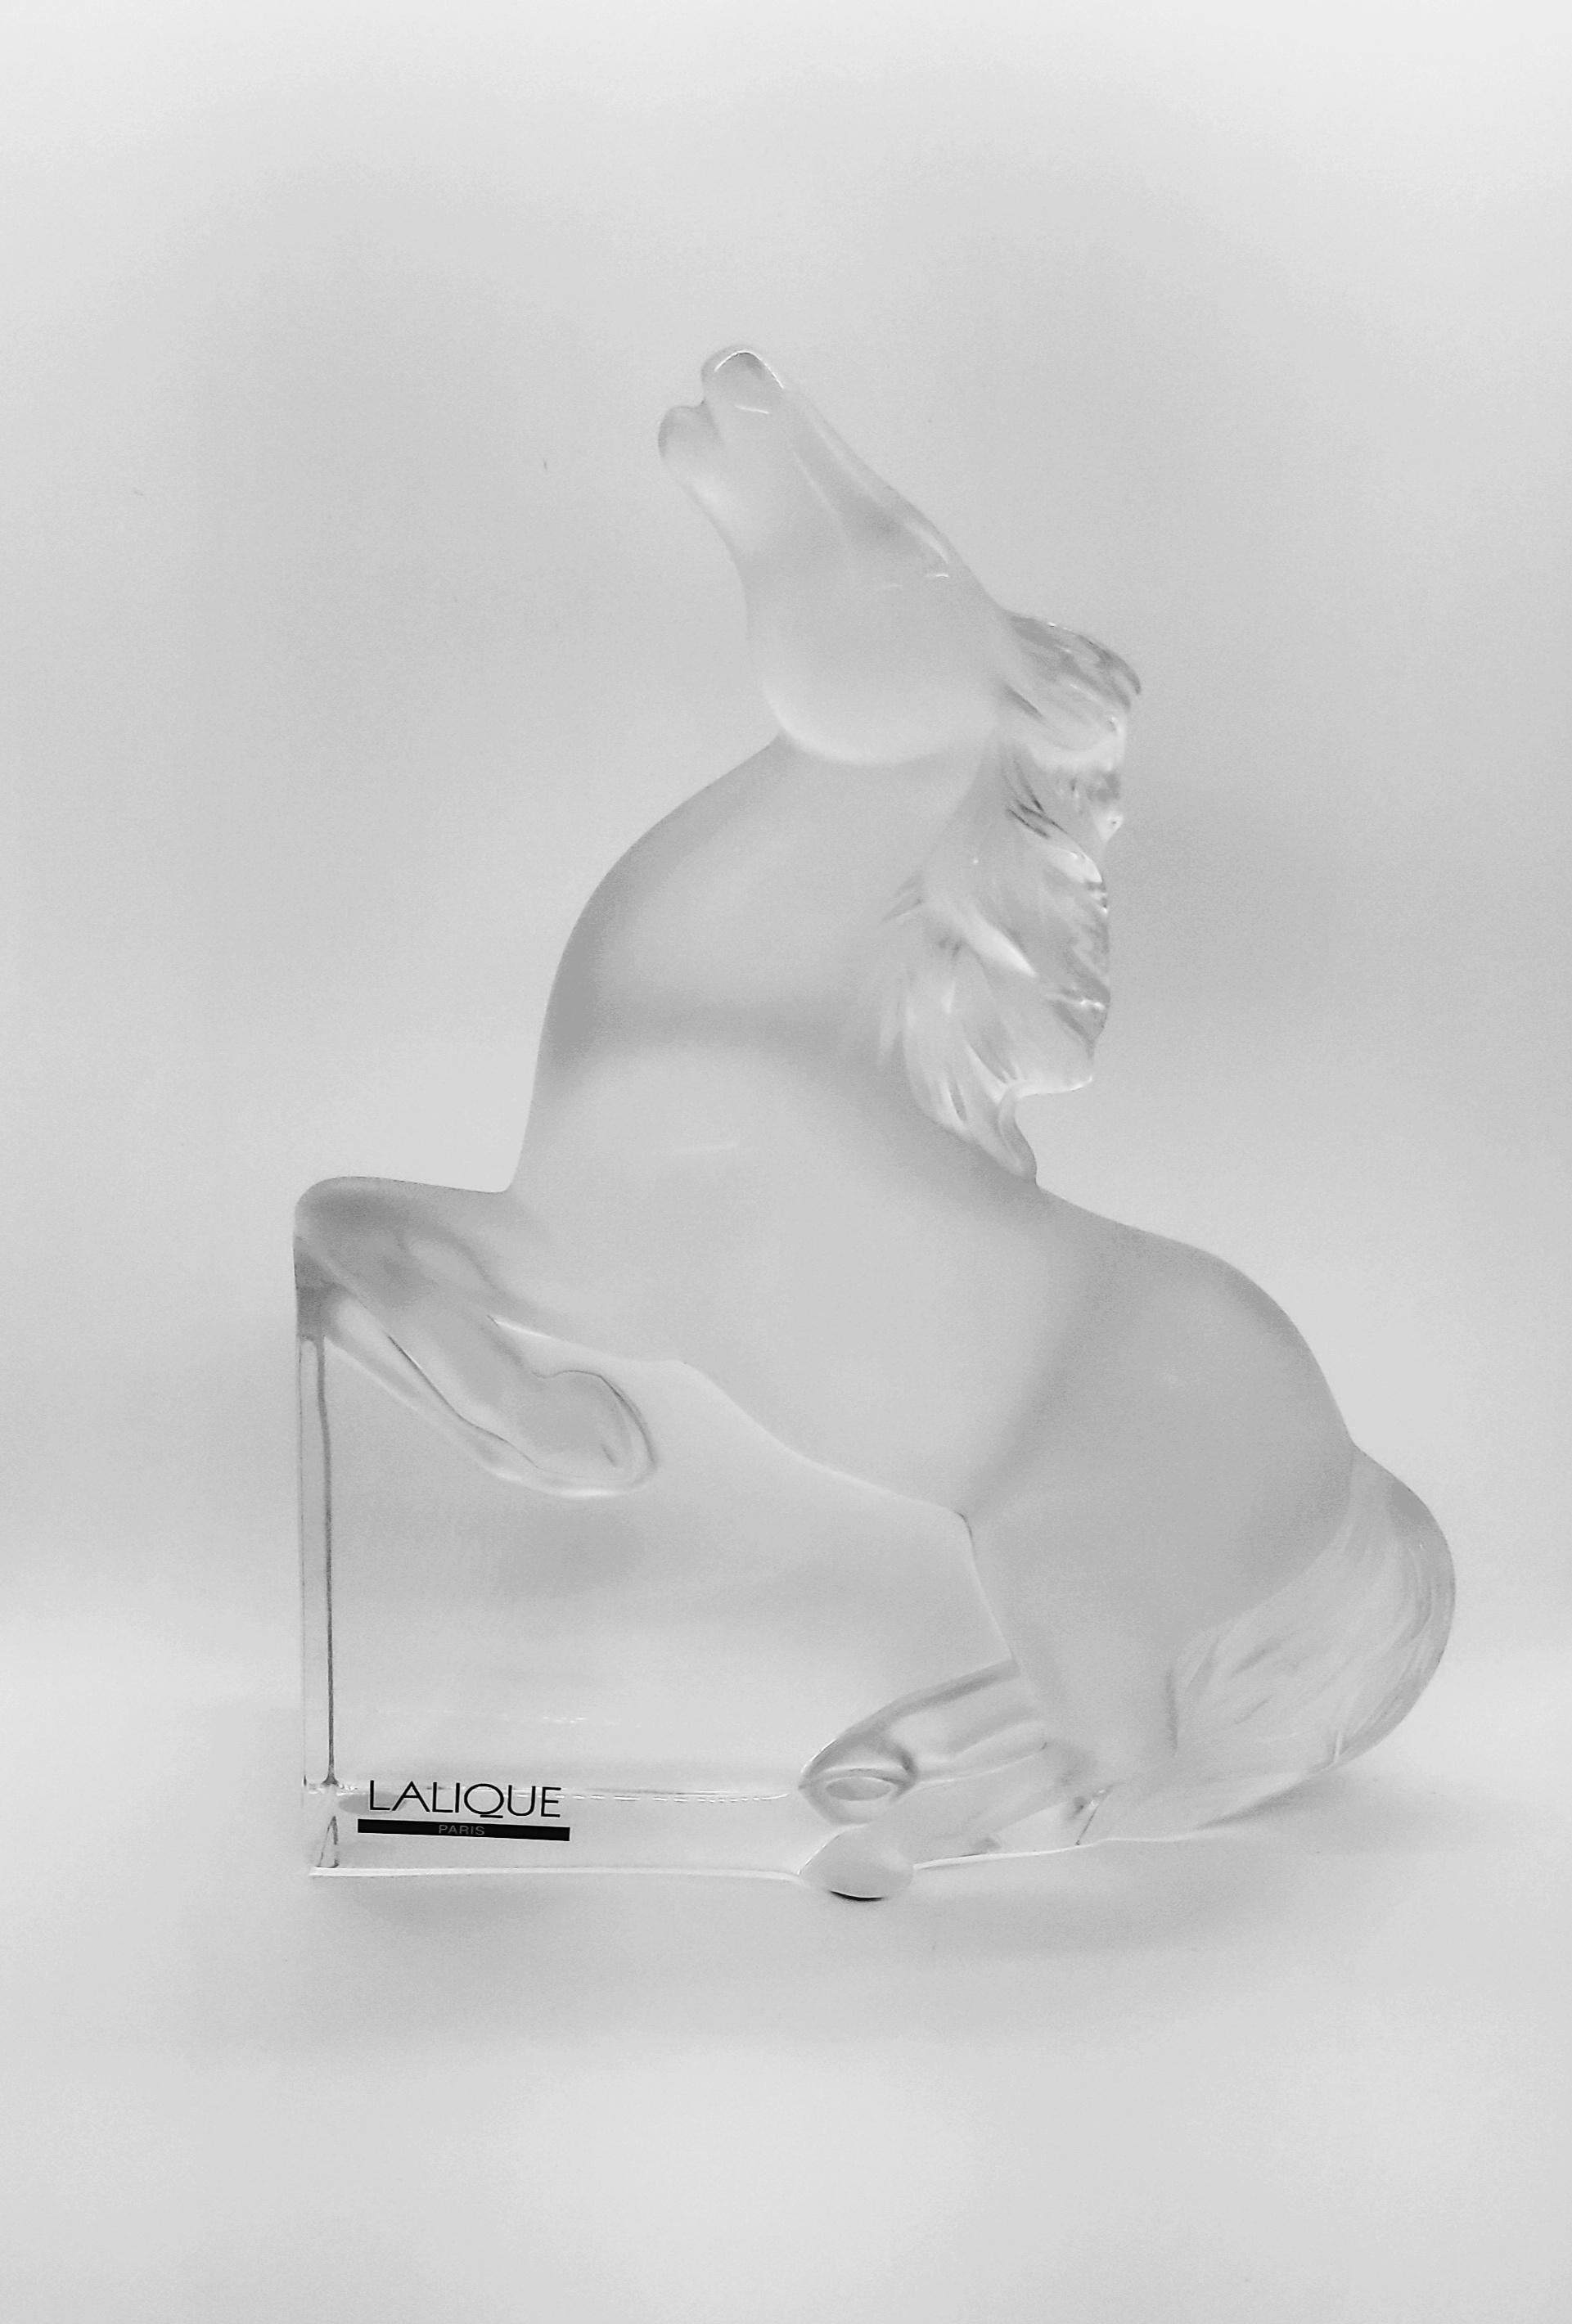 Lalique Kazak Horse Sculpture Cheval Kazak Lalique Opaque Transparent Crystal 1